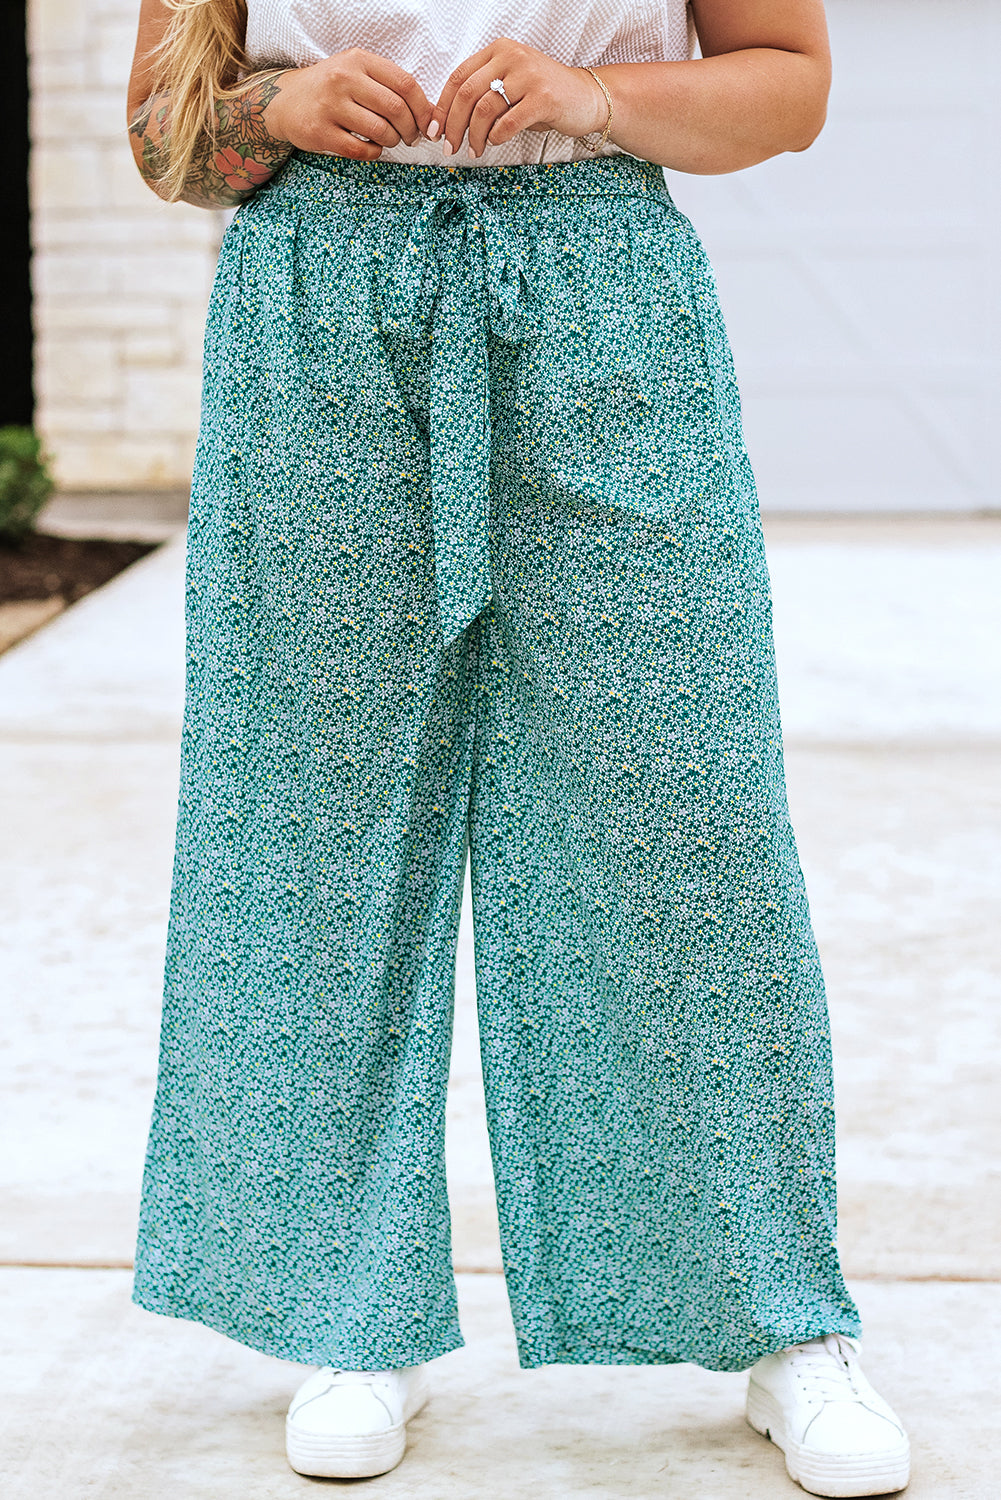 Zelene široke hlače s cvetličnim pasom velike velikosti